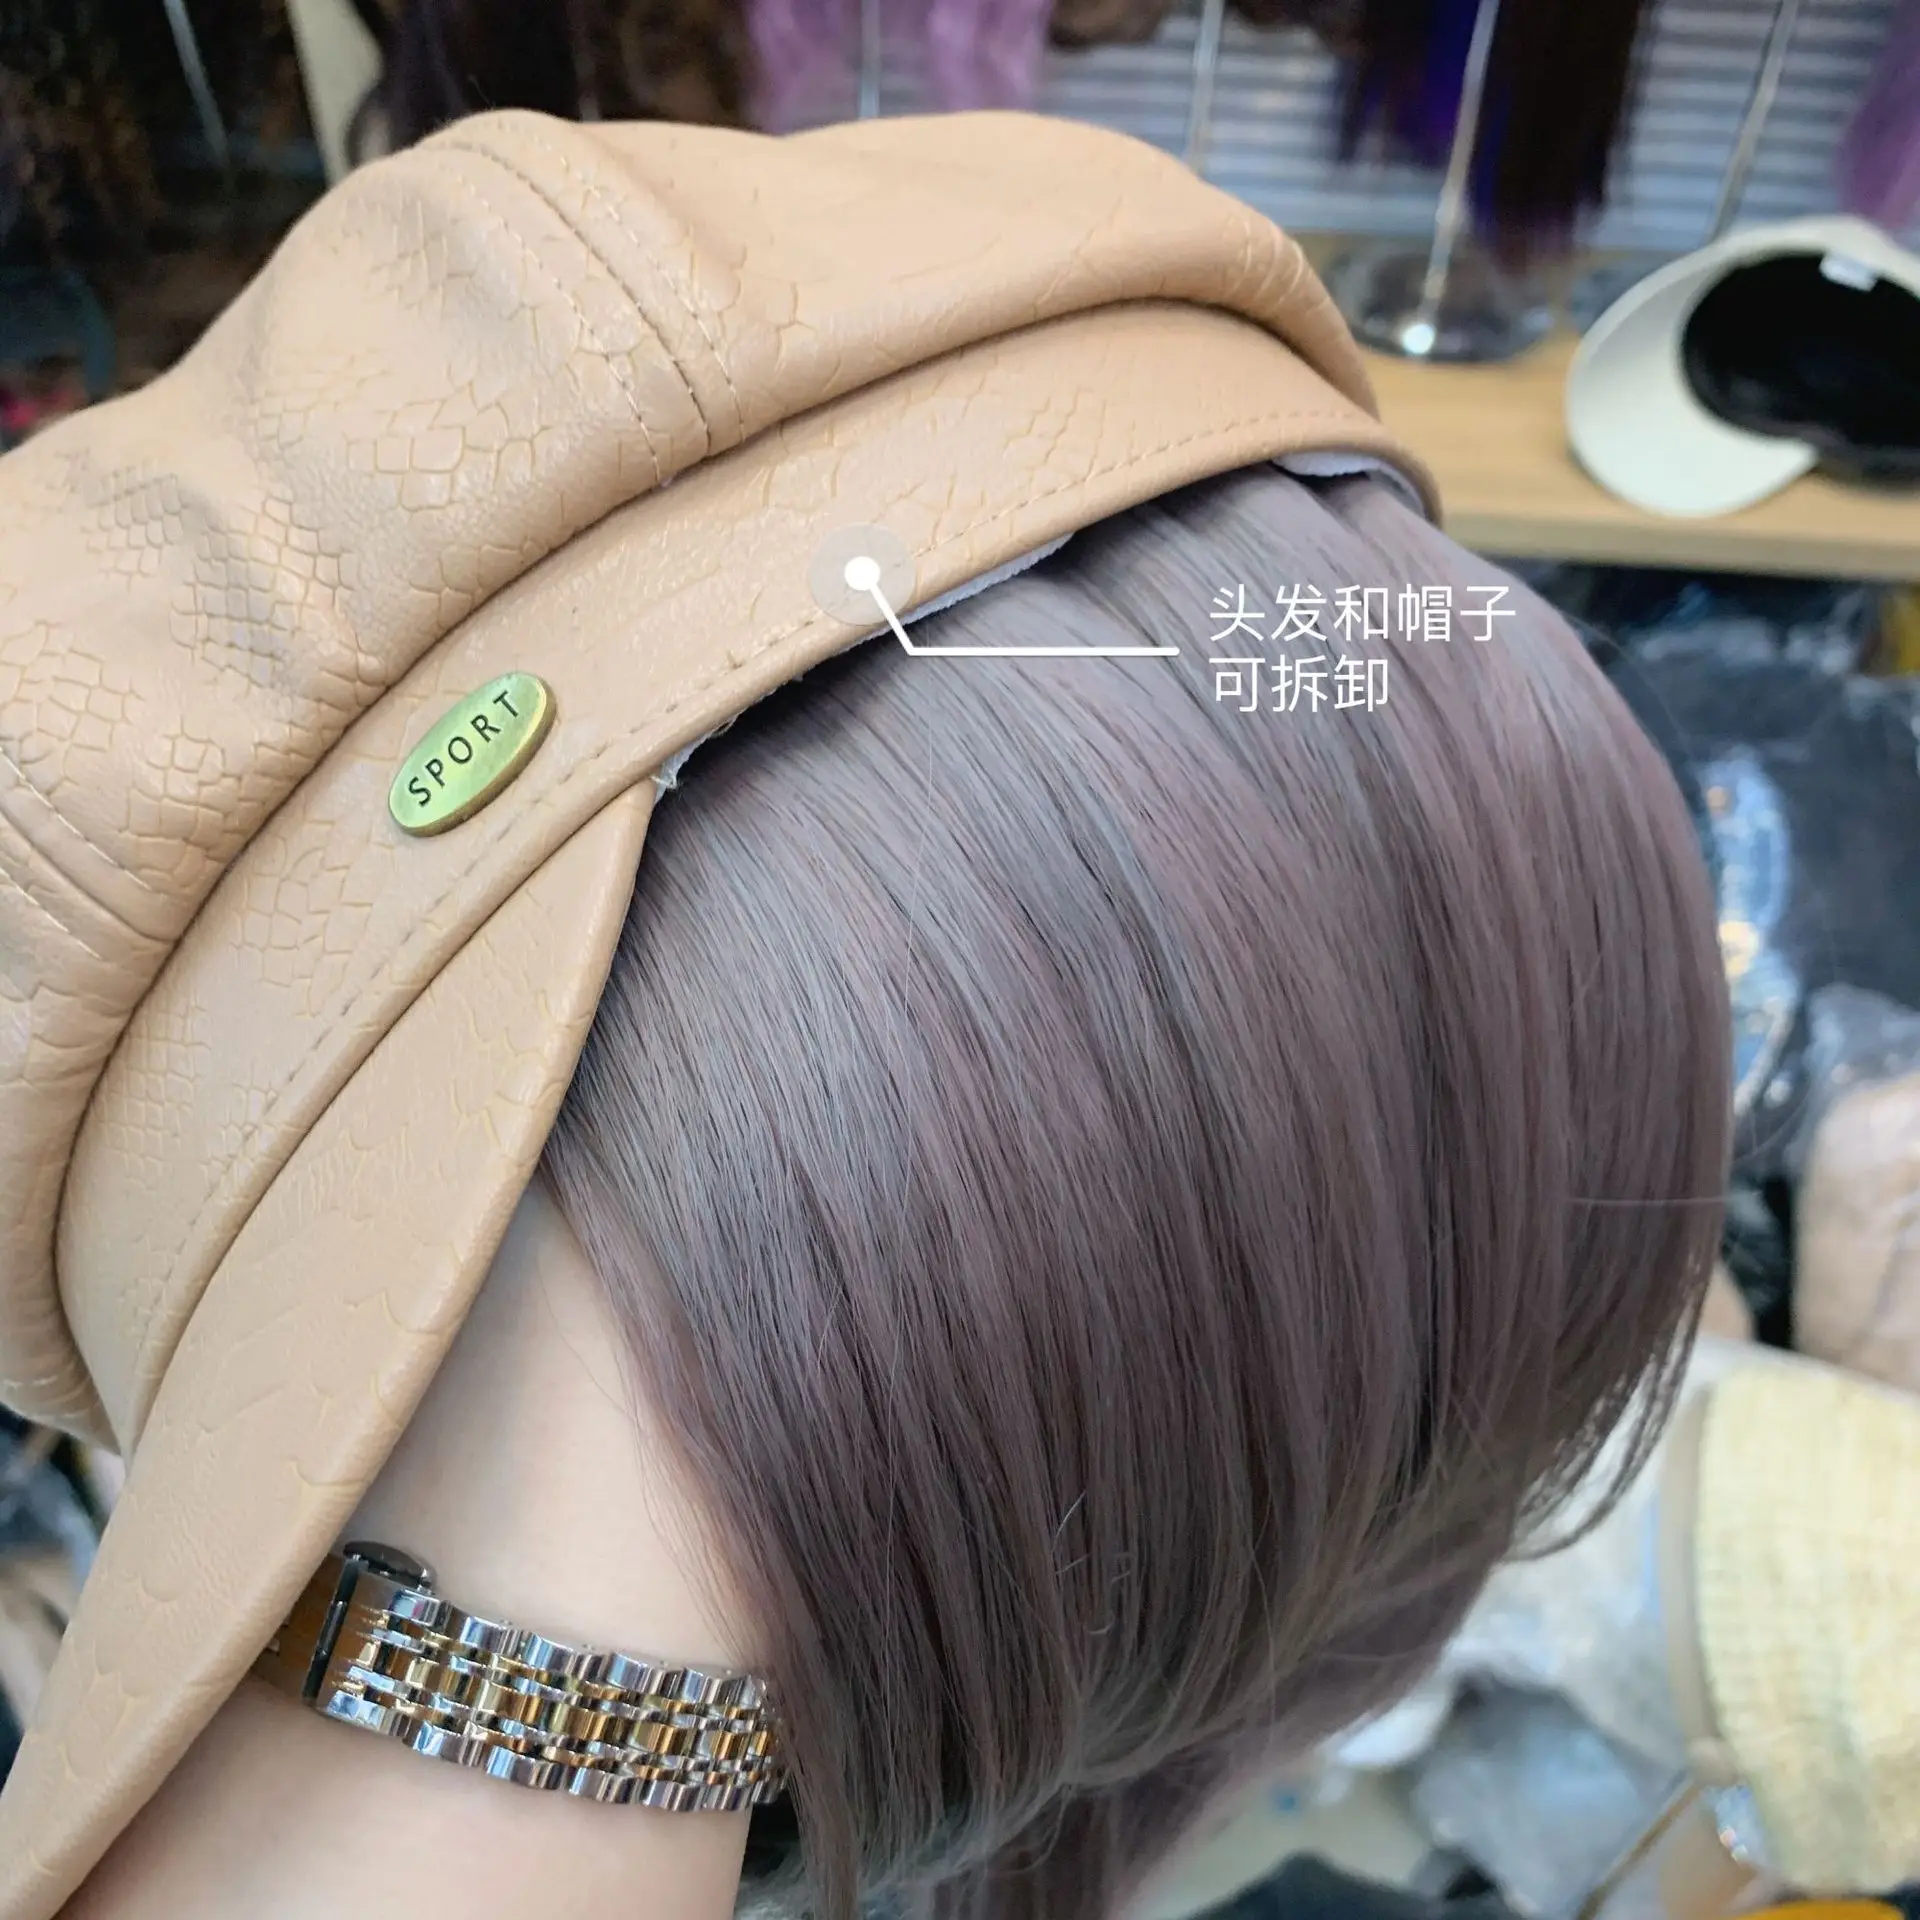 202101-shi moda Kamnitih zrn pu klobuk mozaik Kul False lase sport lady storitev Octagonal klobuk ženske prosti čas ščitniki skp